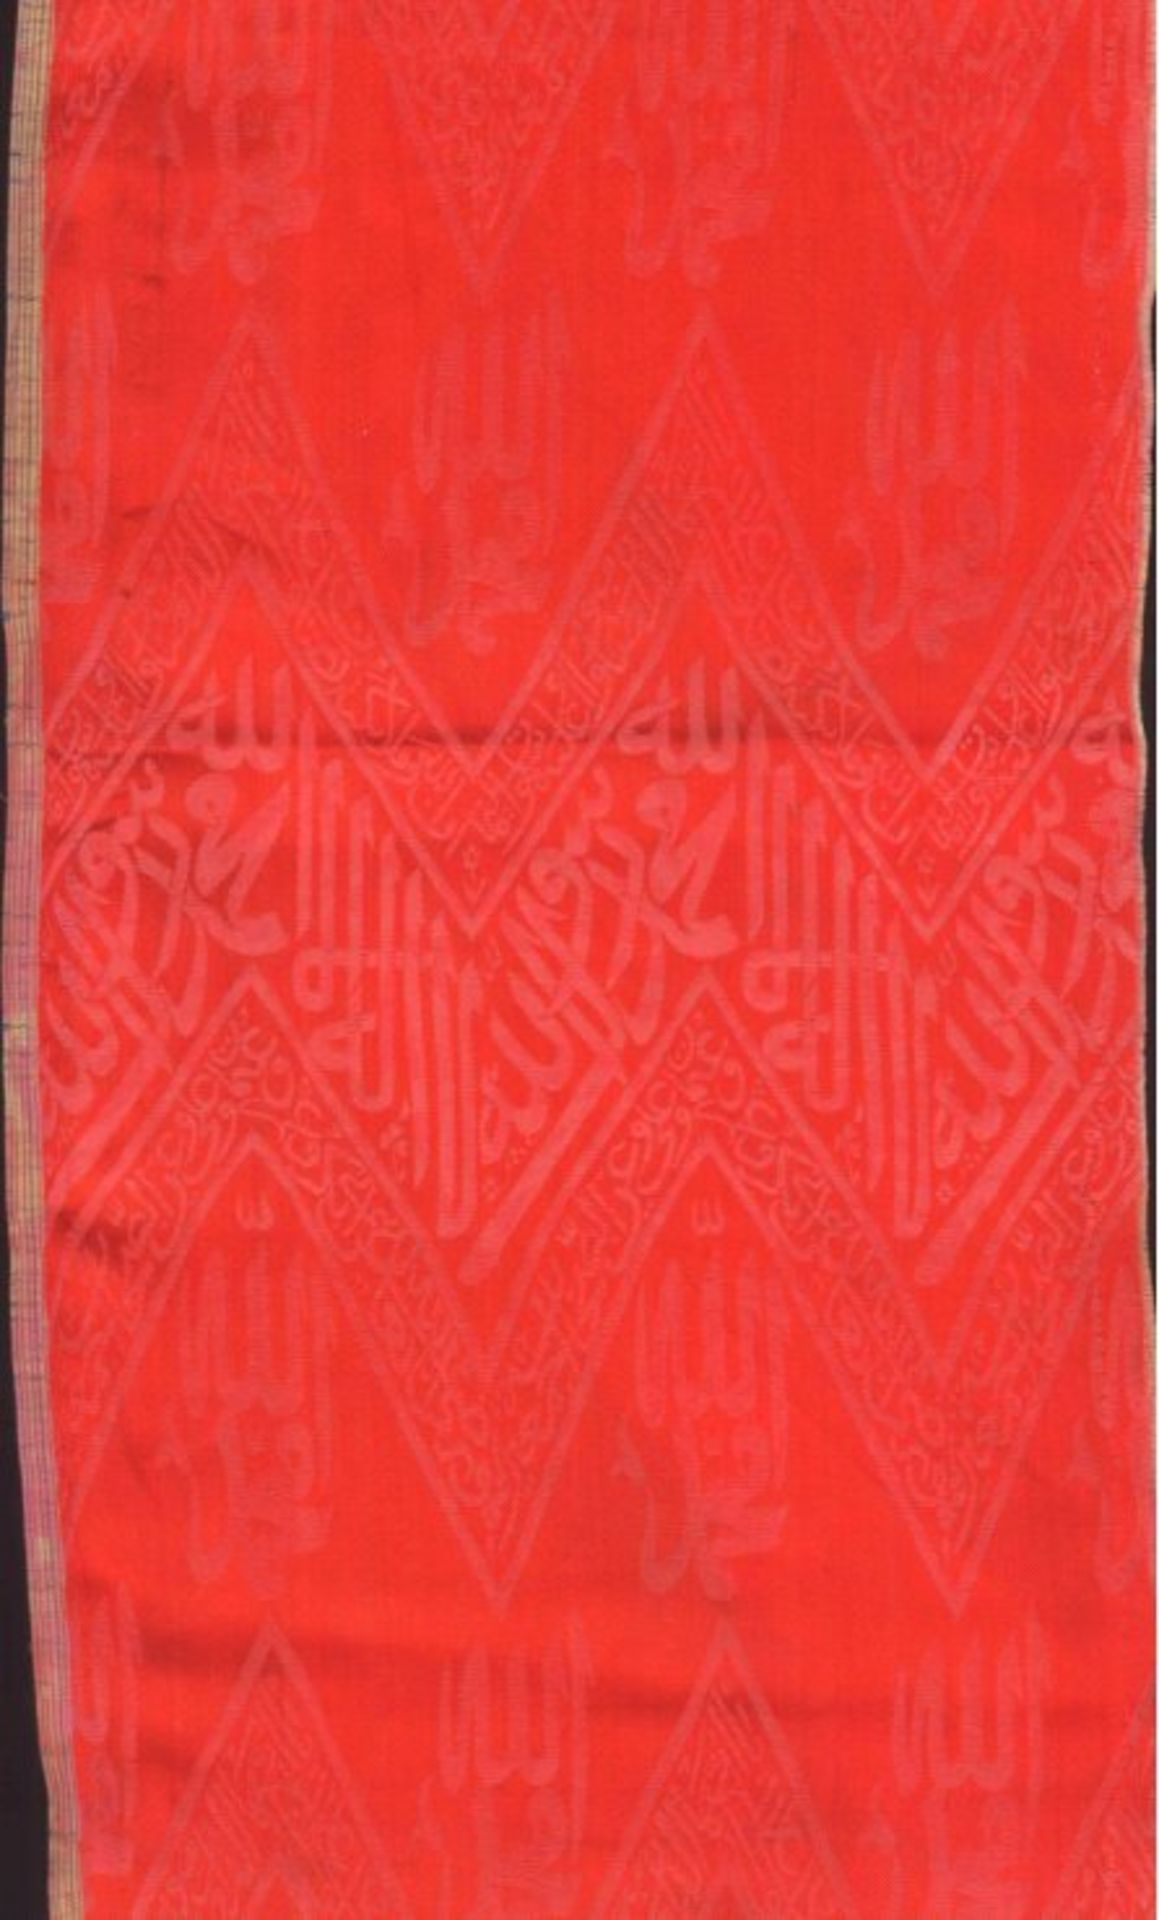 Osmanisches Tuch, Türkey 18./19. Jh.Feine Seidenstickerei mit Schrift: Möge Allah gepriesen sei,sein - Bild 3 aus 5